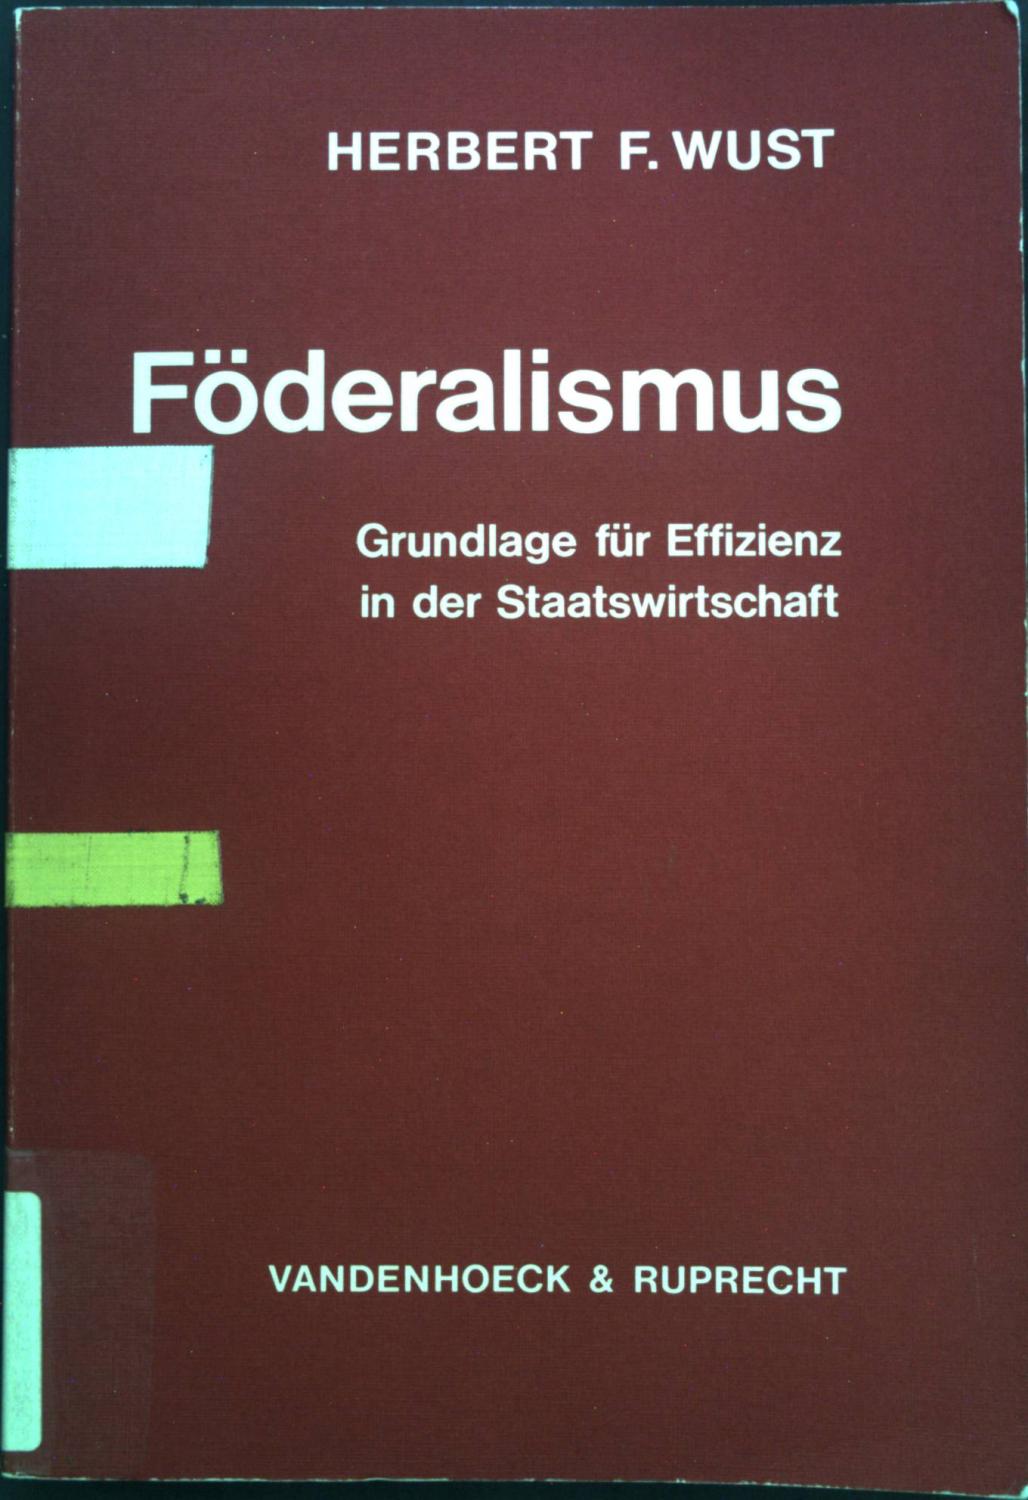 Föderalismus: Grundlage für Effizienz in der Staatswirtschaft. Abhandlungen zu den Wirtschaftlichen Staatswissenschaften; Bd. 20. - Wust, Herbert F.